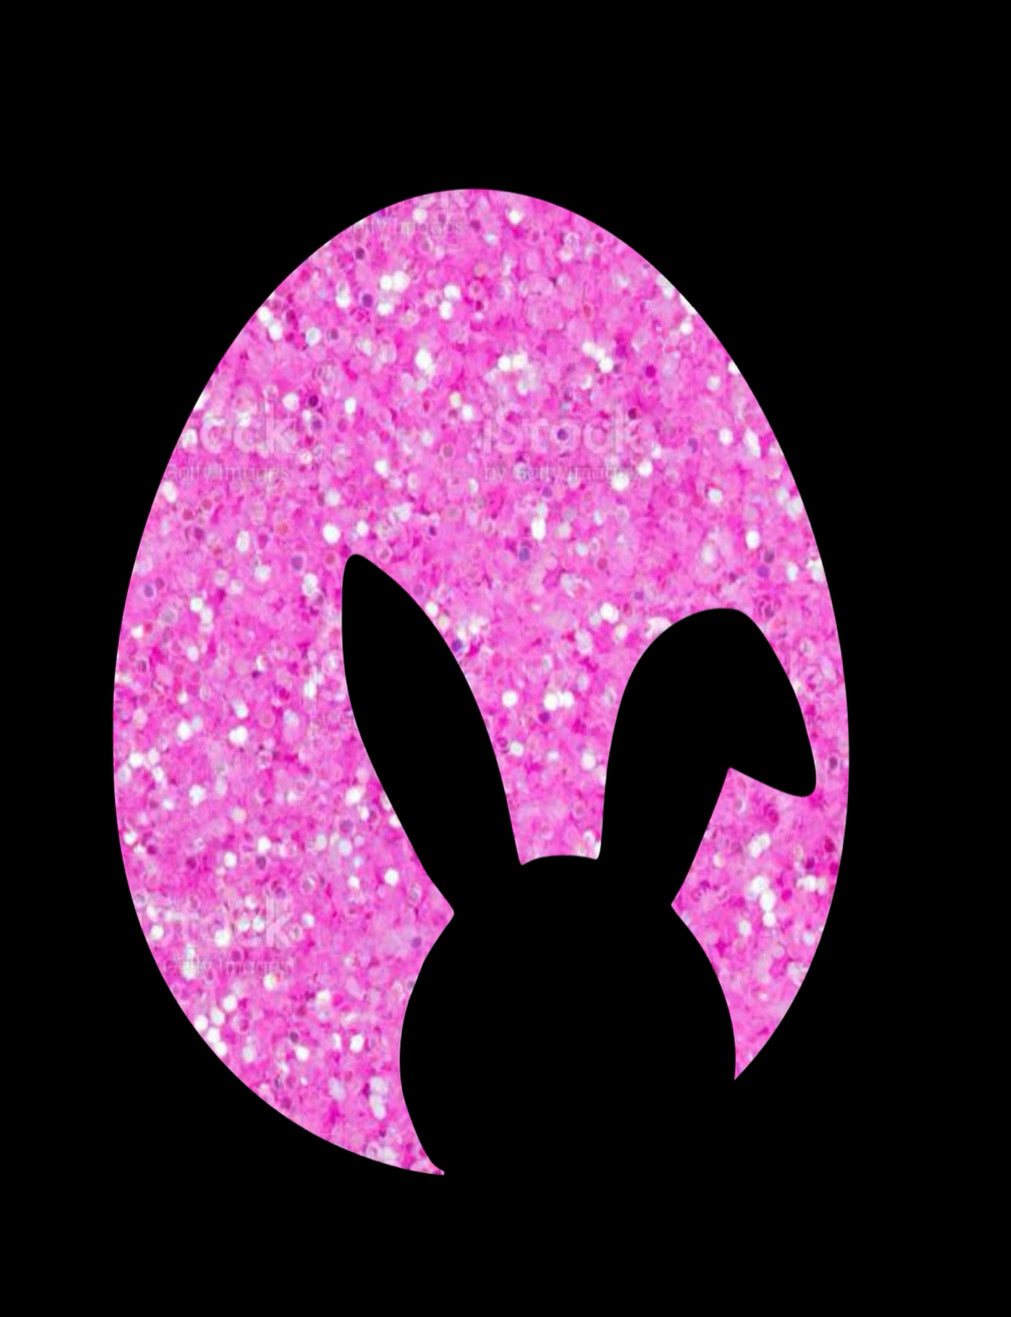 Mini Bunny Easter Egg DiscontinuedMarx